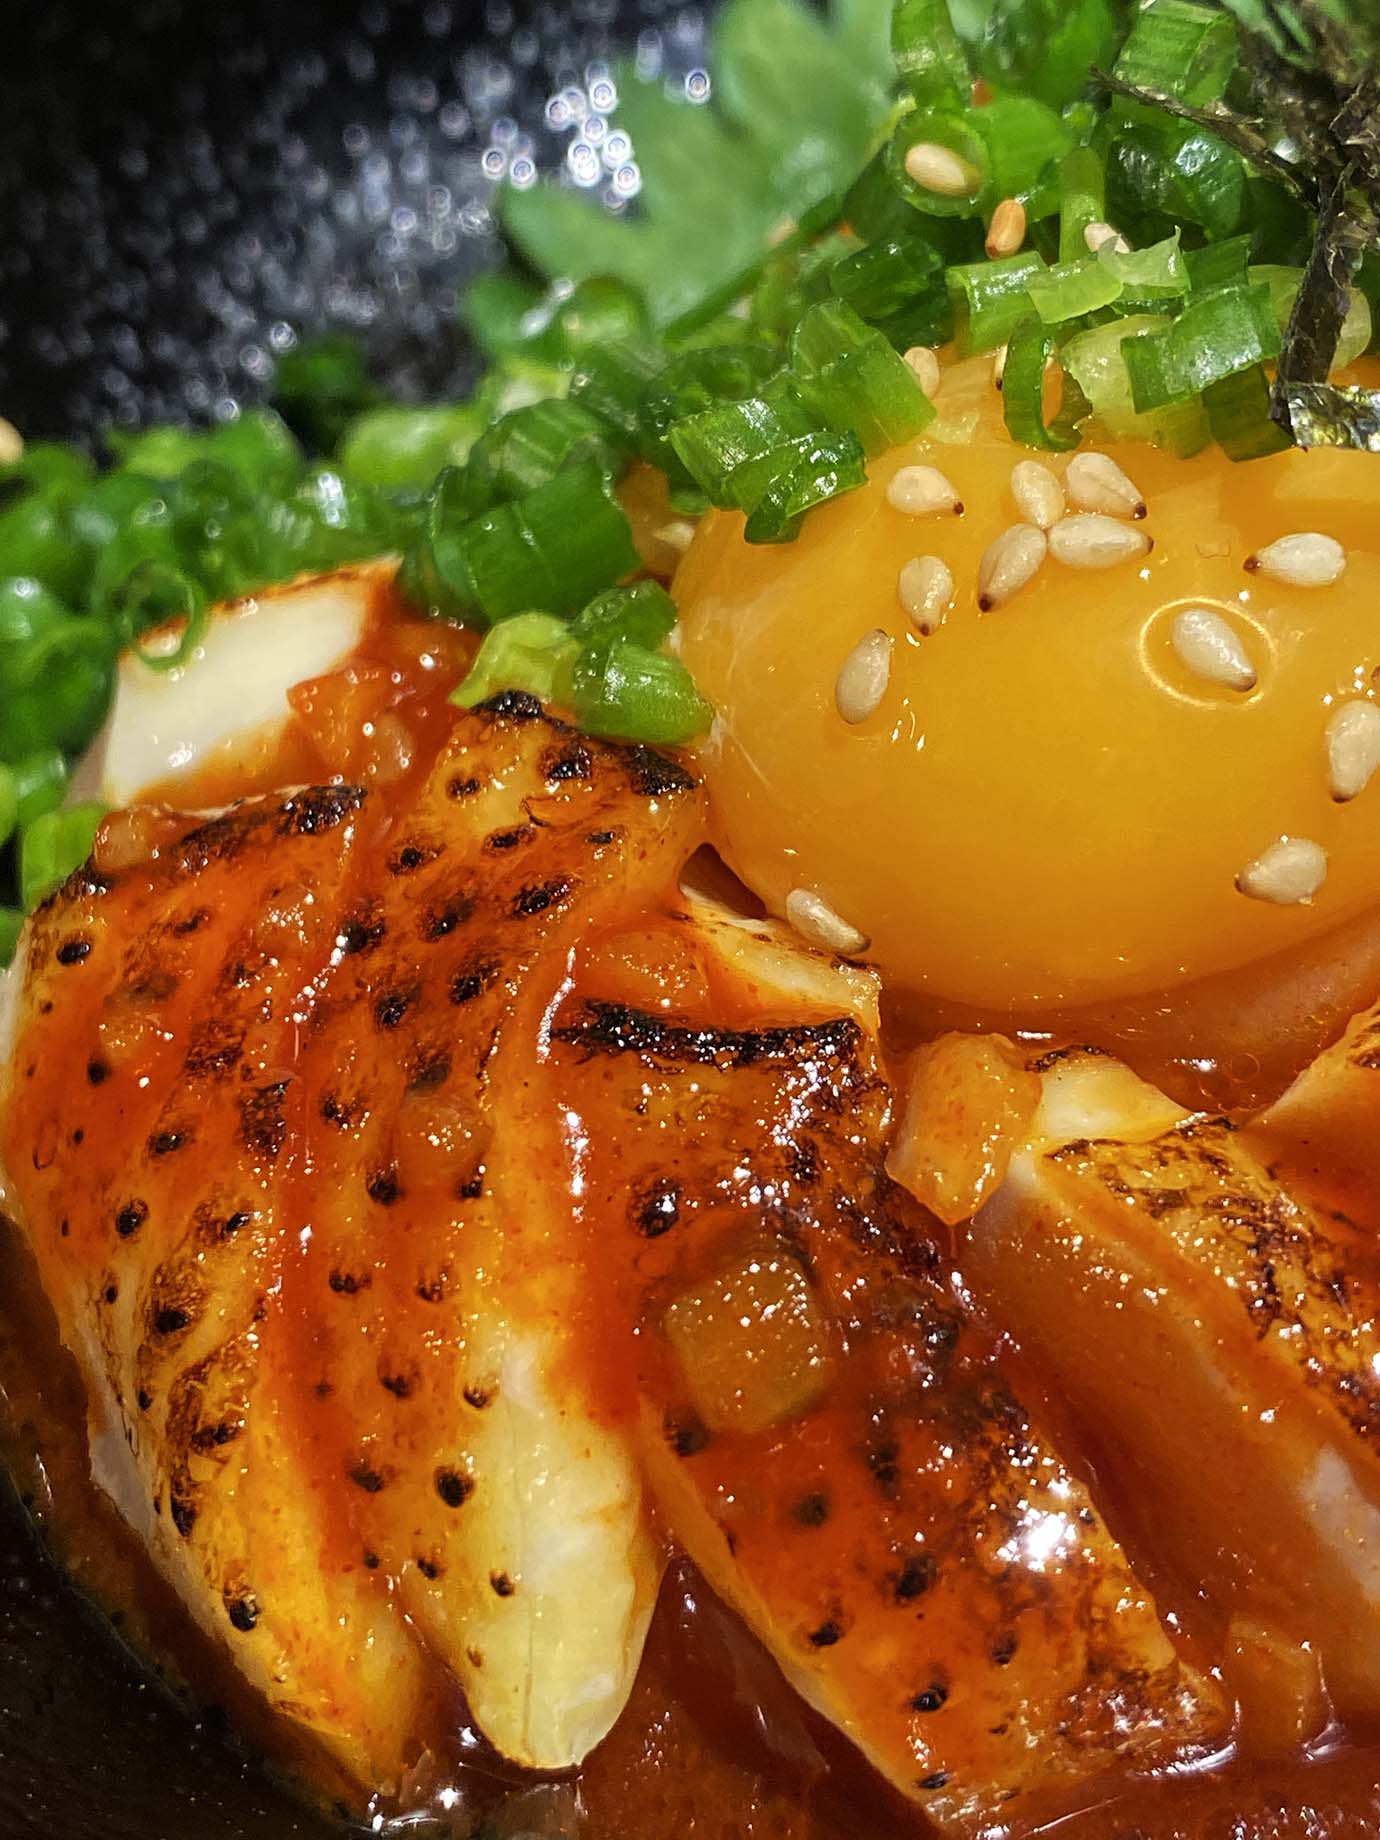 【iPhoneグルメ】 東京で食べる九州の極上鶏肉料理がウマすぎる件 / iPhone11Proで撮影「黒鶏ファニー」